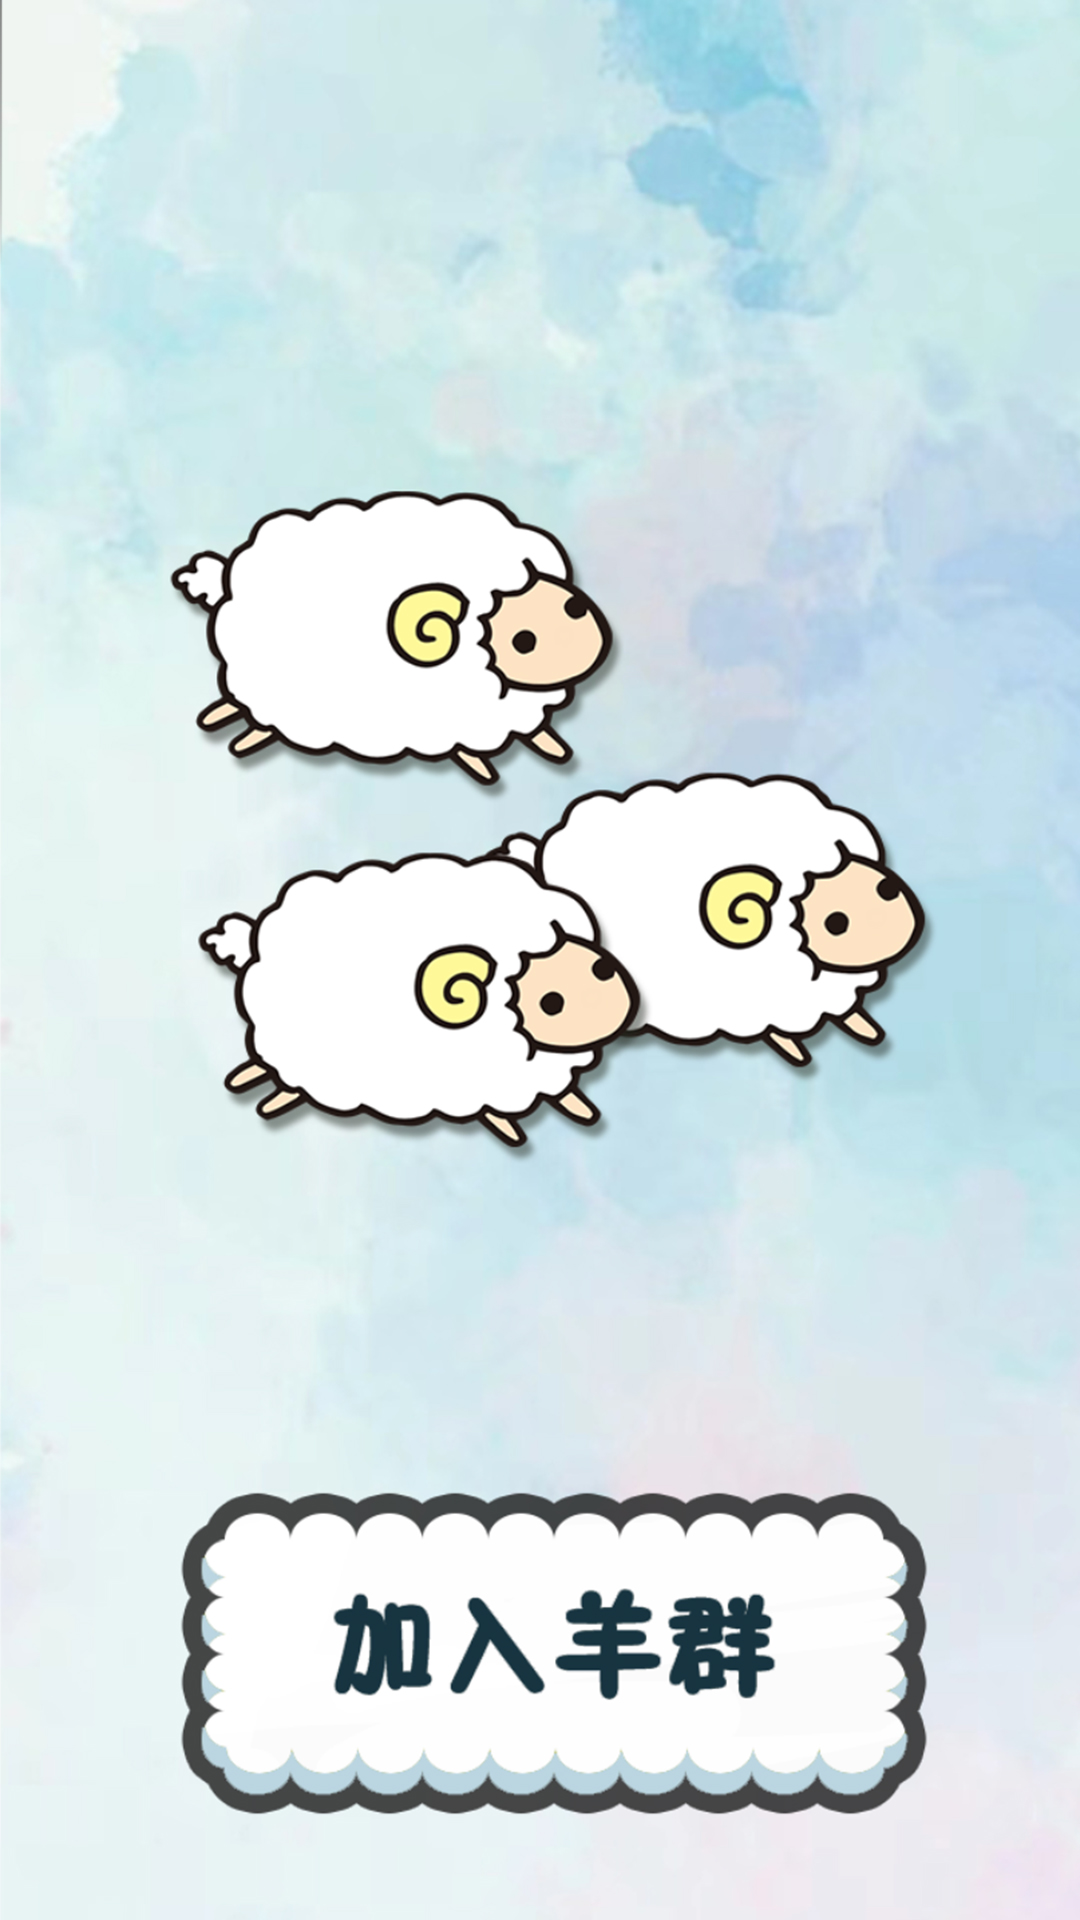 冒险岛羊羊大冒险移动版游戏下载安装图片1